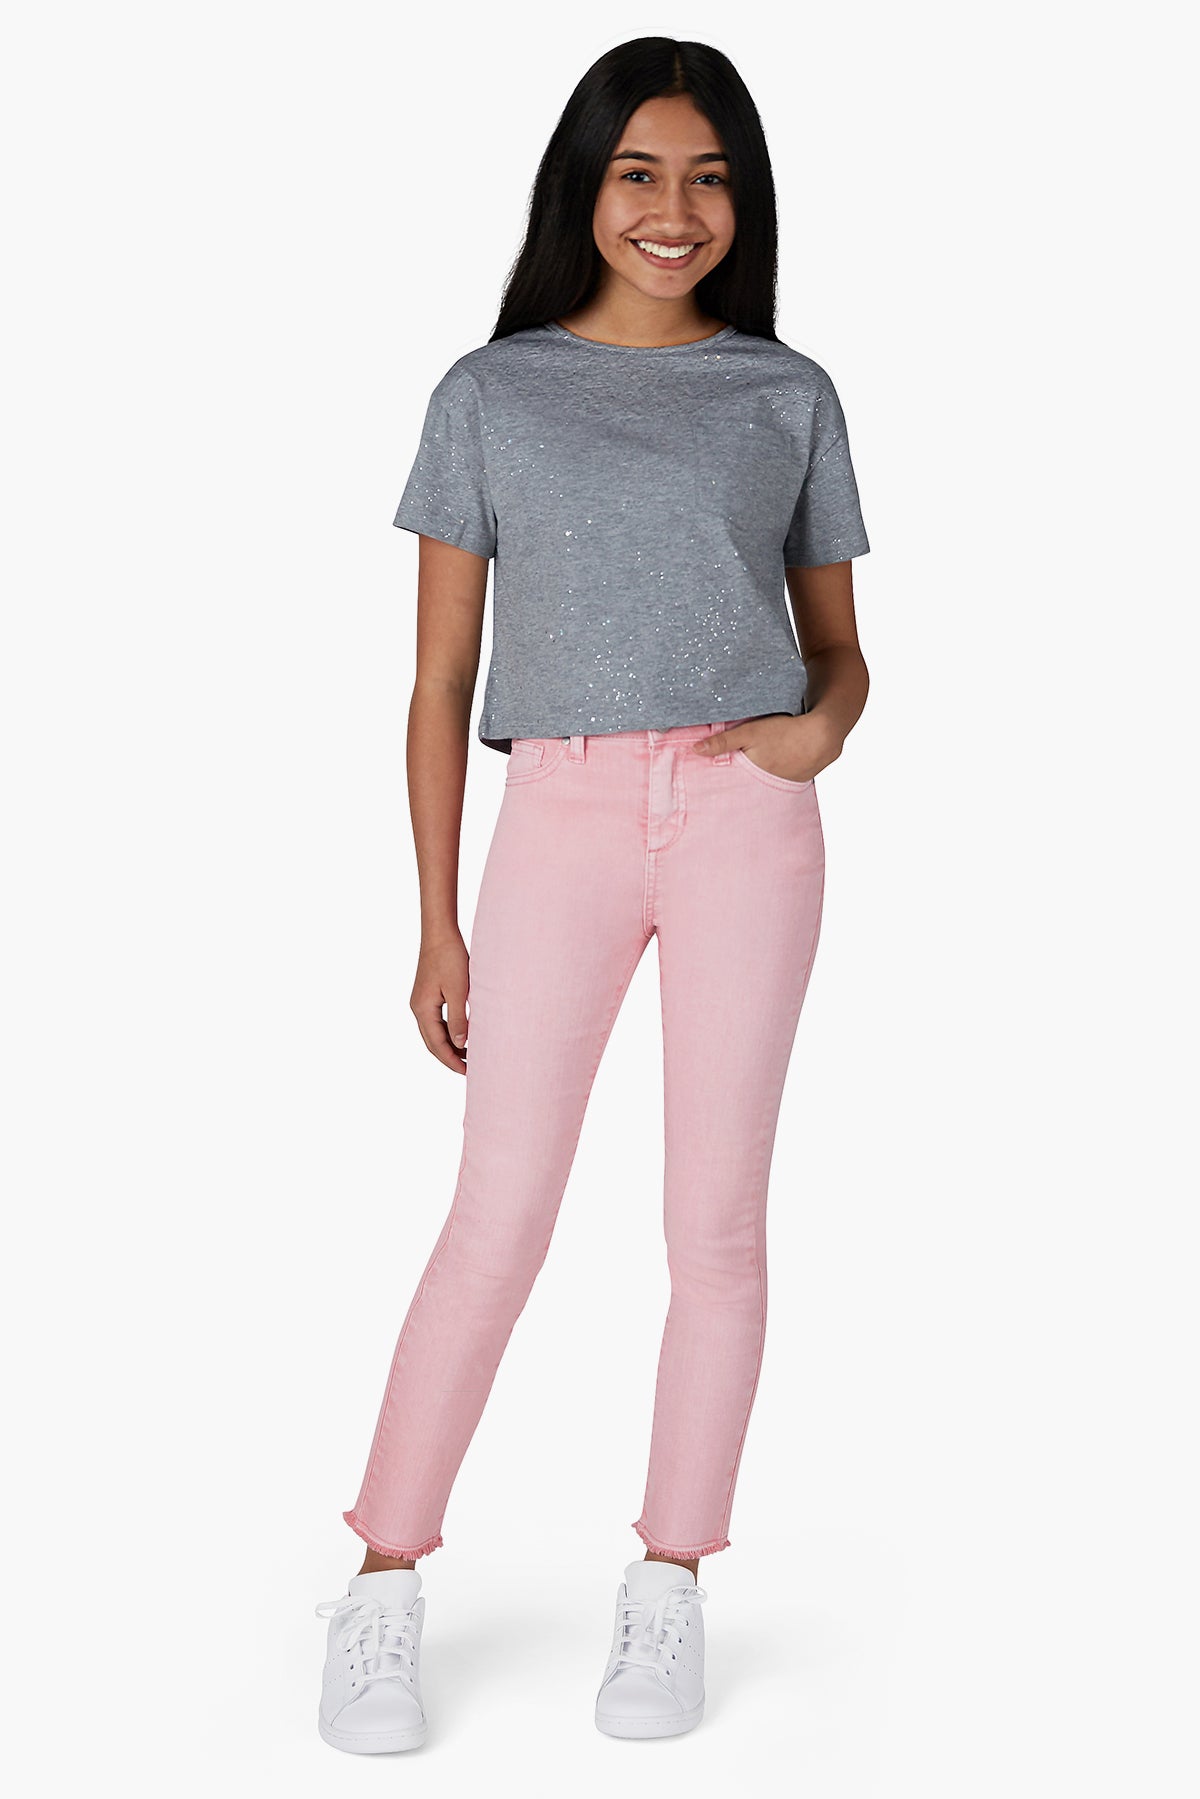 PINC jeans girls size 8 - Girls bottoms